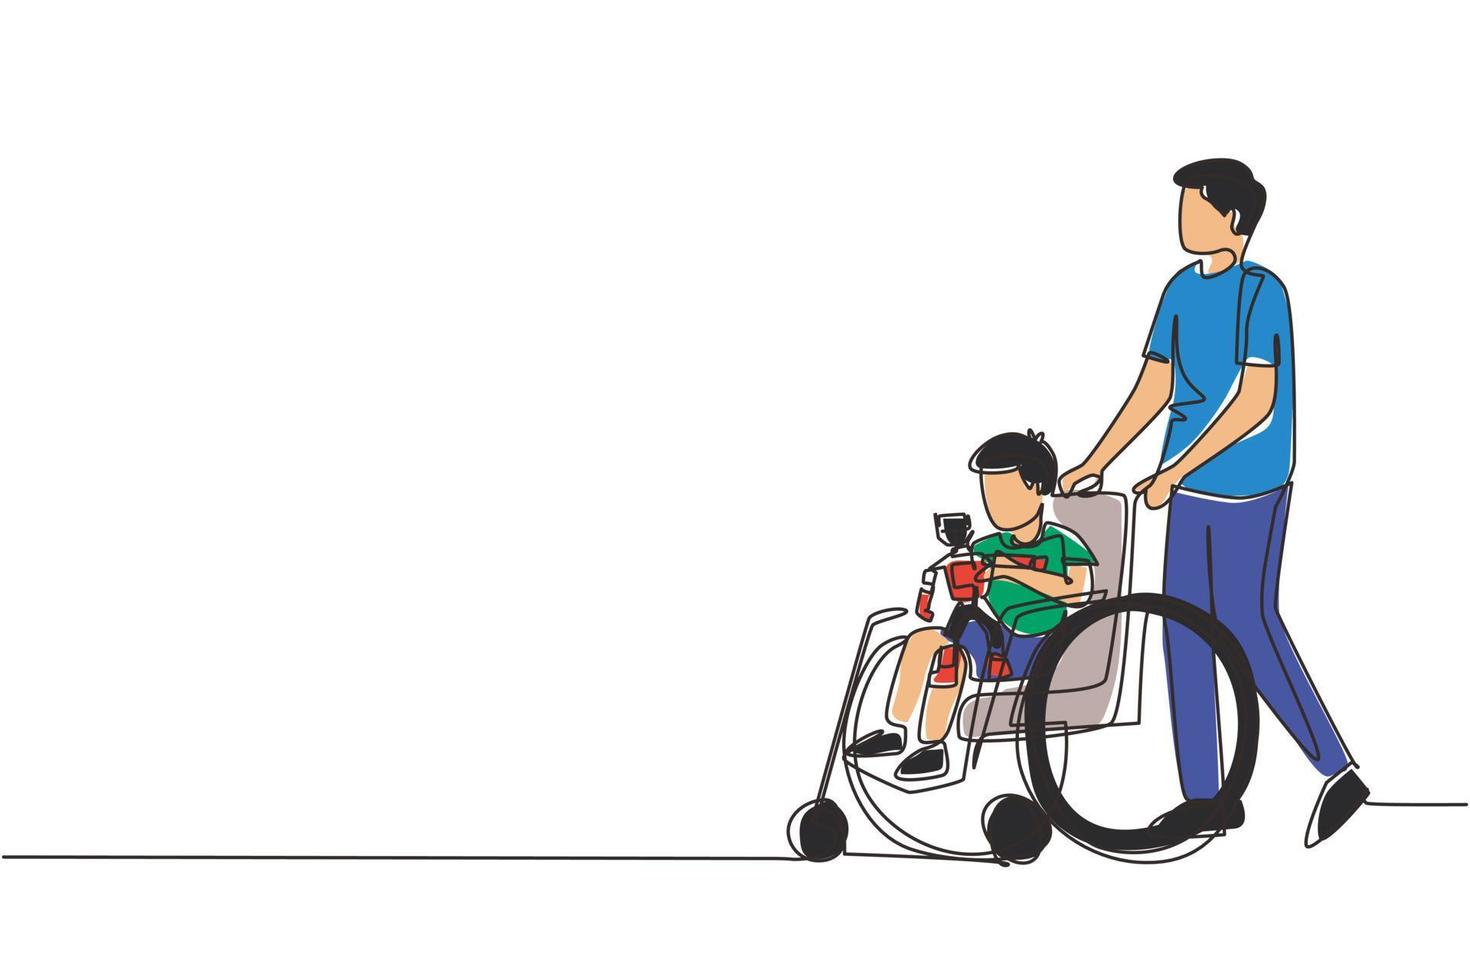 centro de rehabilitación de dibujo de una sola línea para niños. el padre cuida al niño. papá feliz ayuda a los niños con discapacidades en silla de ruedas con juguetes robot. vector de diseño de dibujo de línea continua